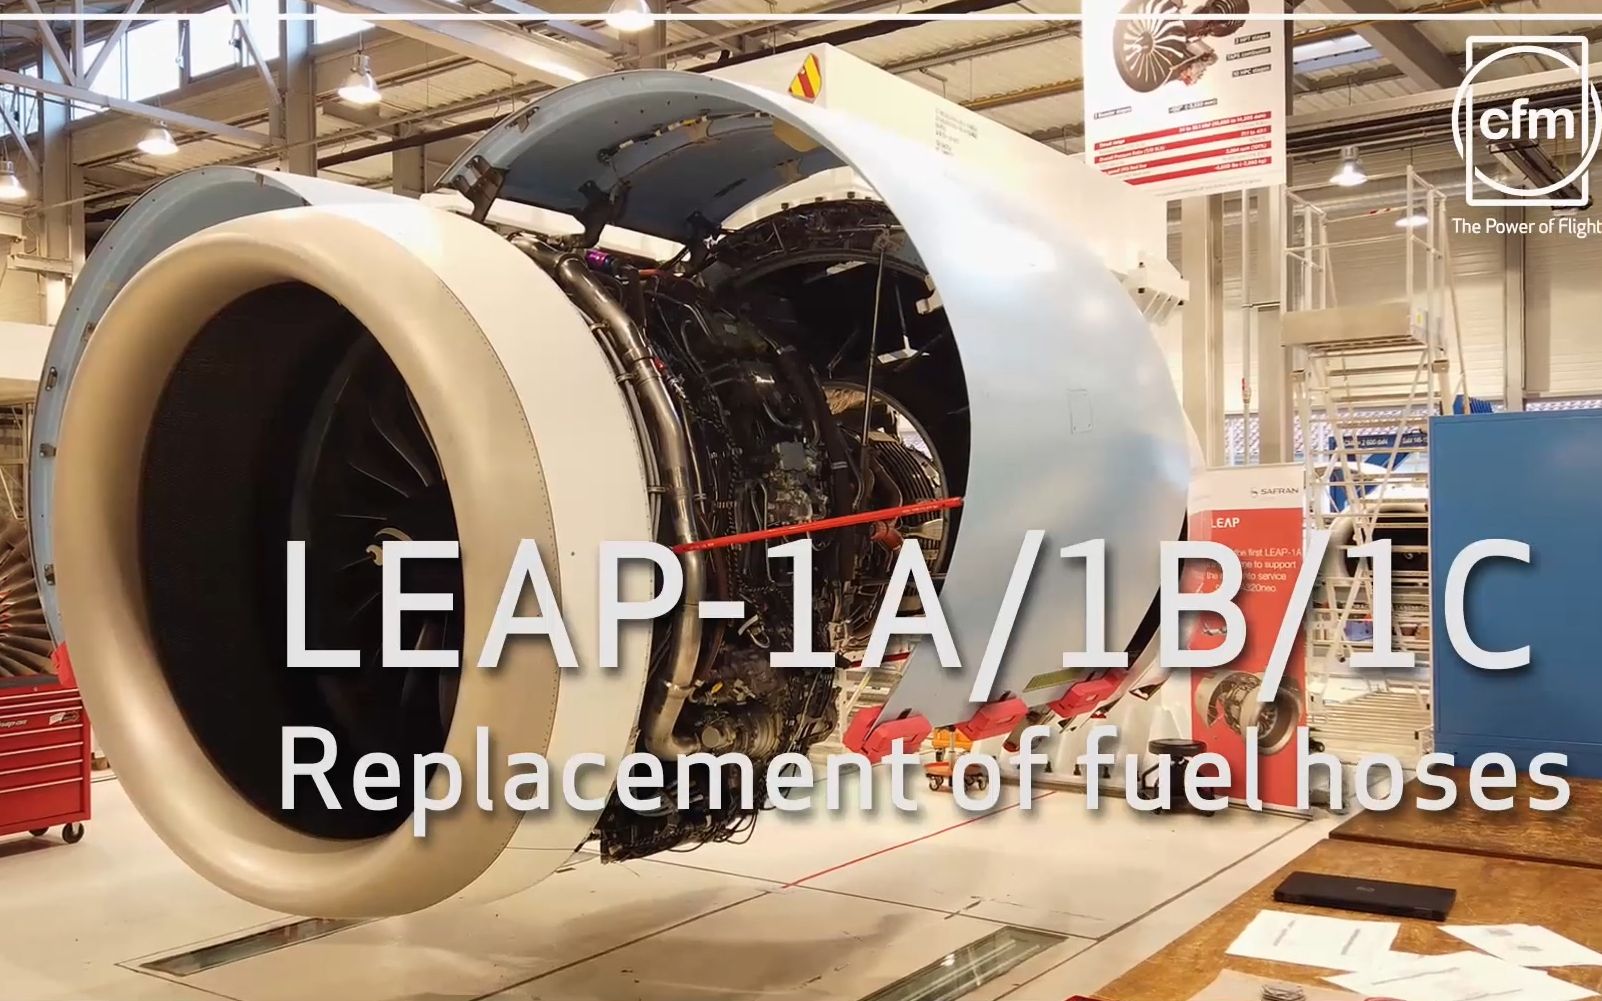 ge航空维修时刻leap1a1b1c发动机燃油管路更换